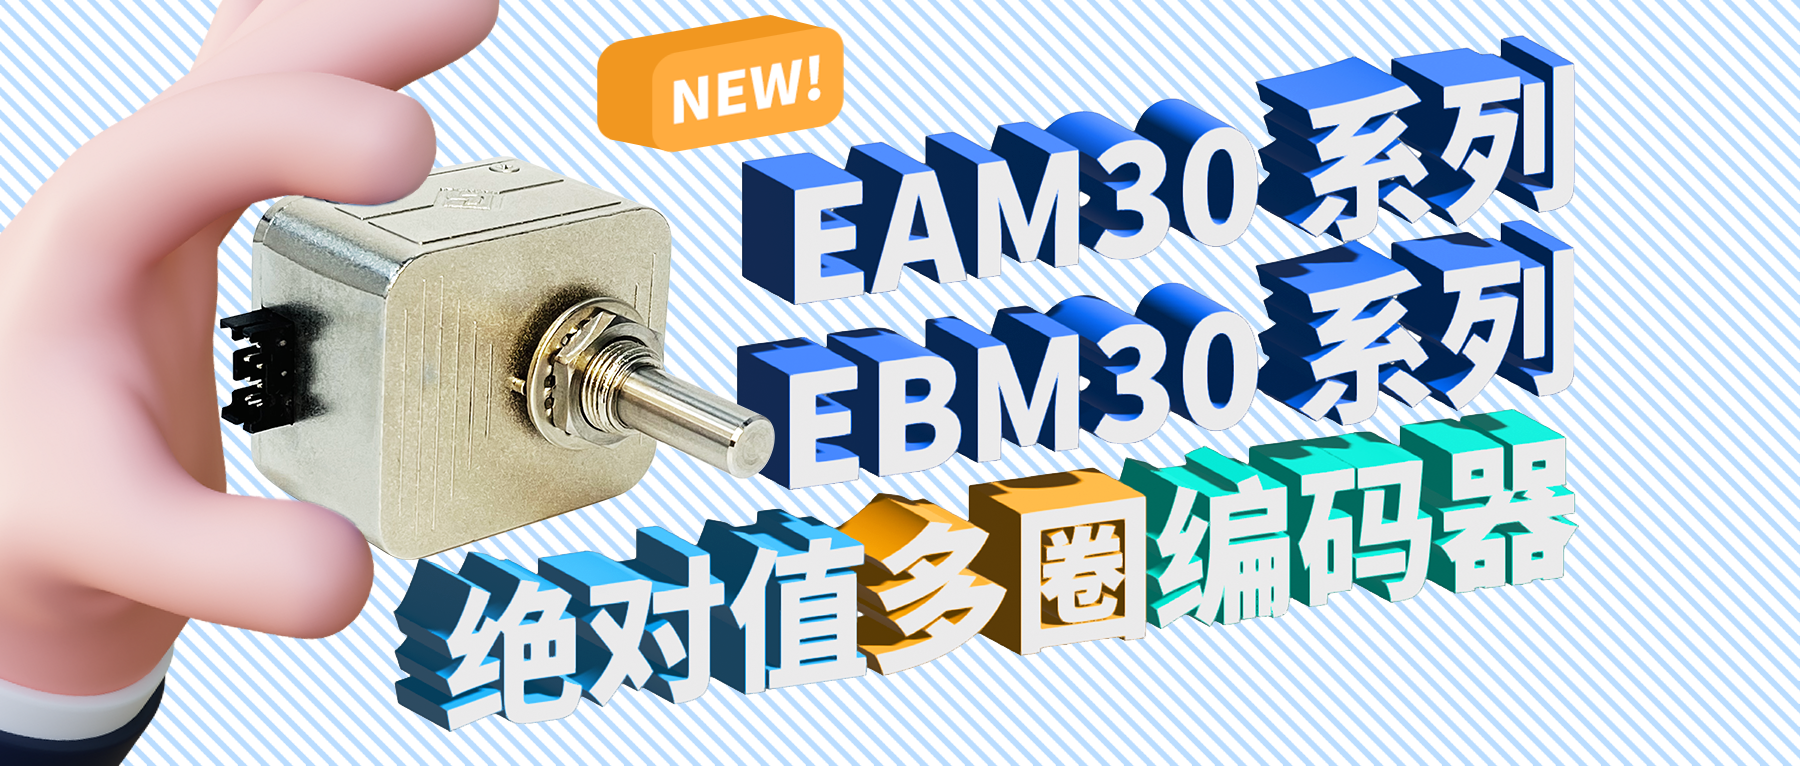 新品推荐——EAM30&EBM30系列绝对值多圈编码器